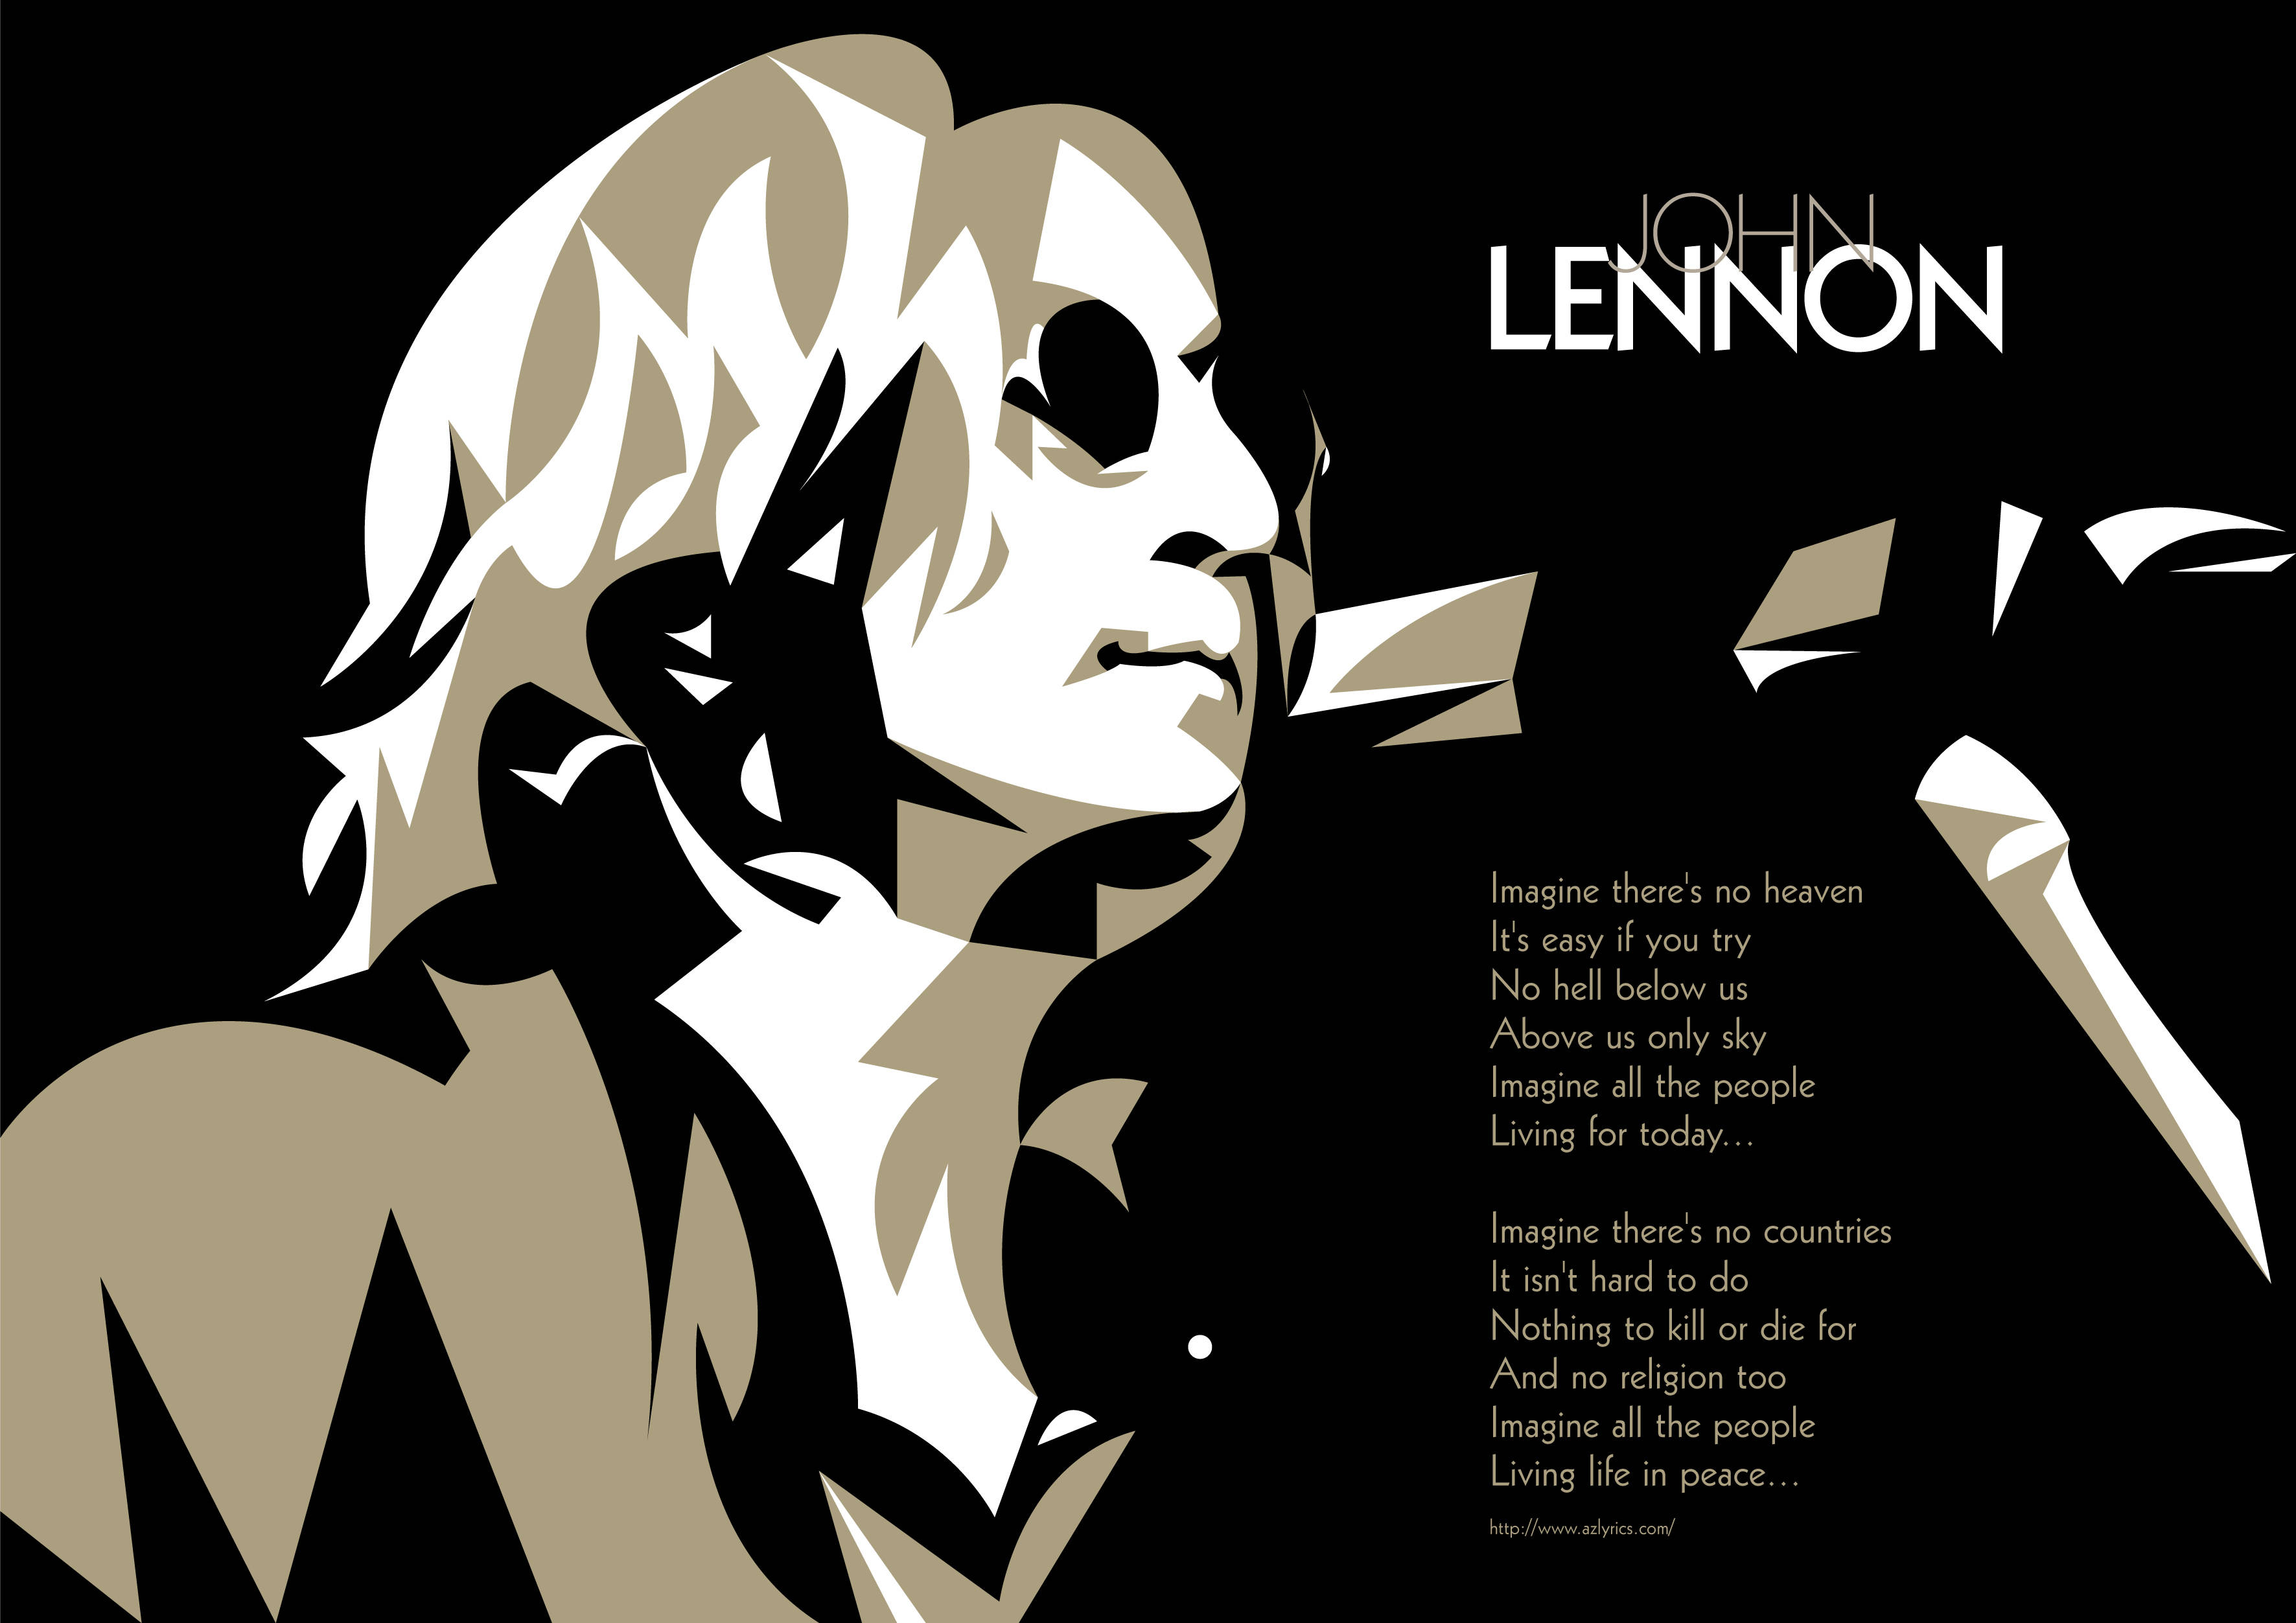 Леннон песня imagine. Imagine Lennon. John Lennon - imagine. John Lennon imagine обложка. Imagine альбом Джона Леннона обложка.